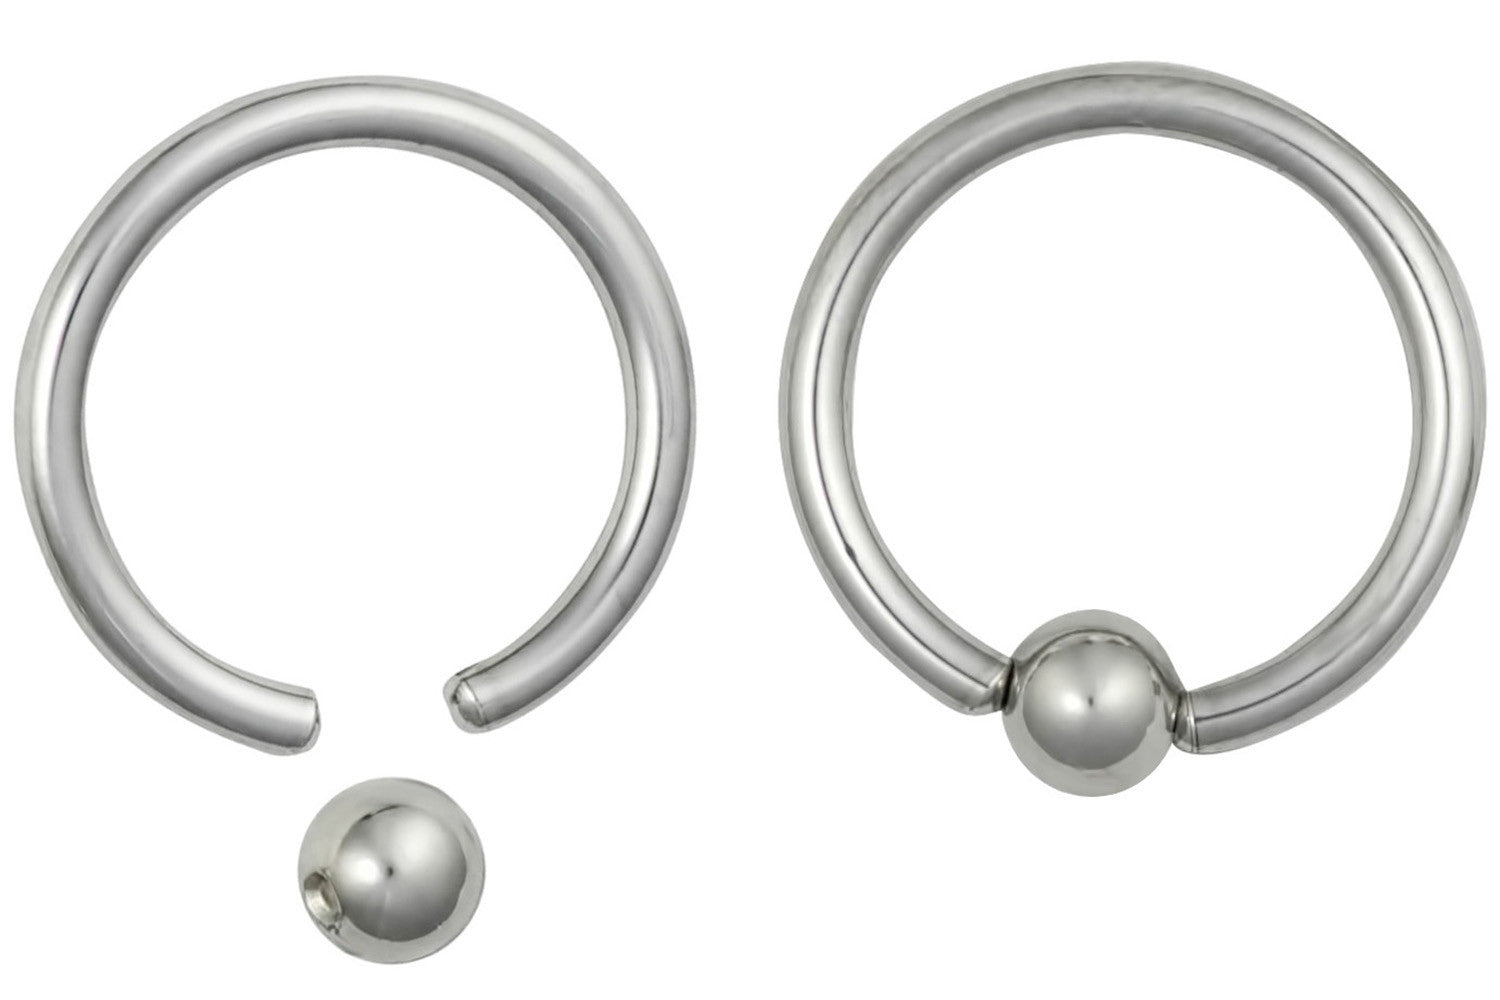 Pair of Captive Bead Earrings